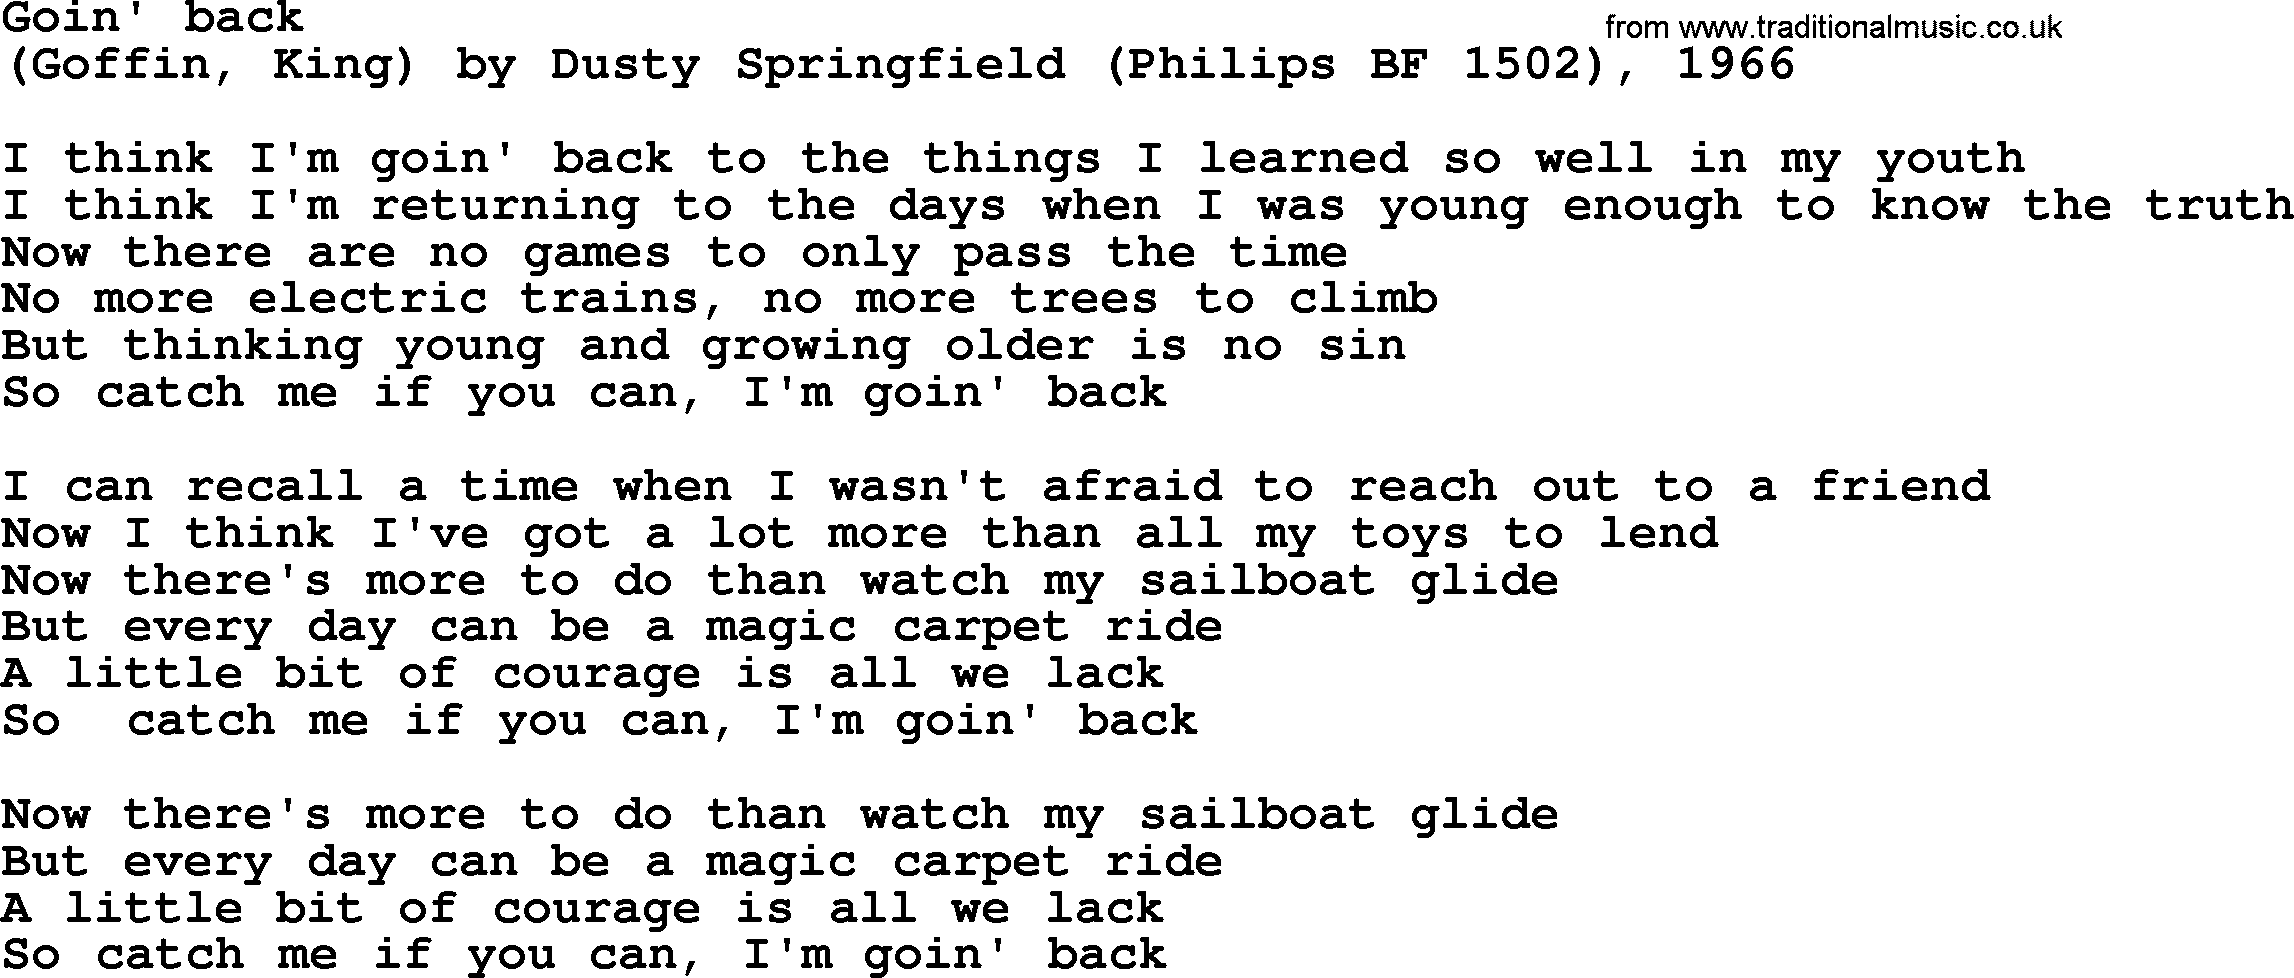 Bruce Springsteen song: Goin' Back lyrics